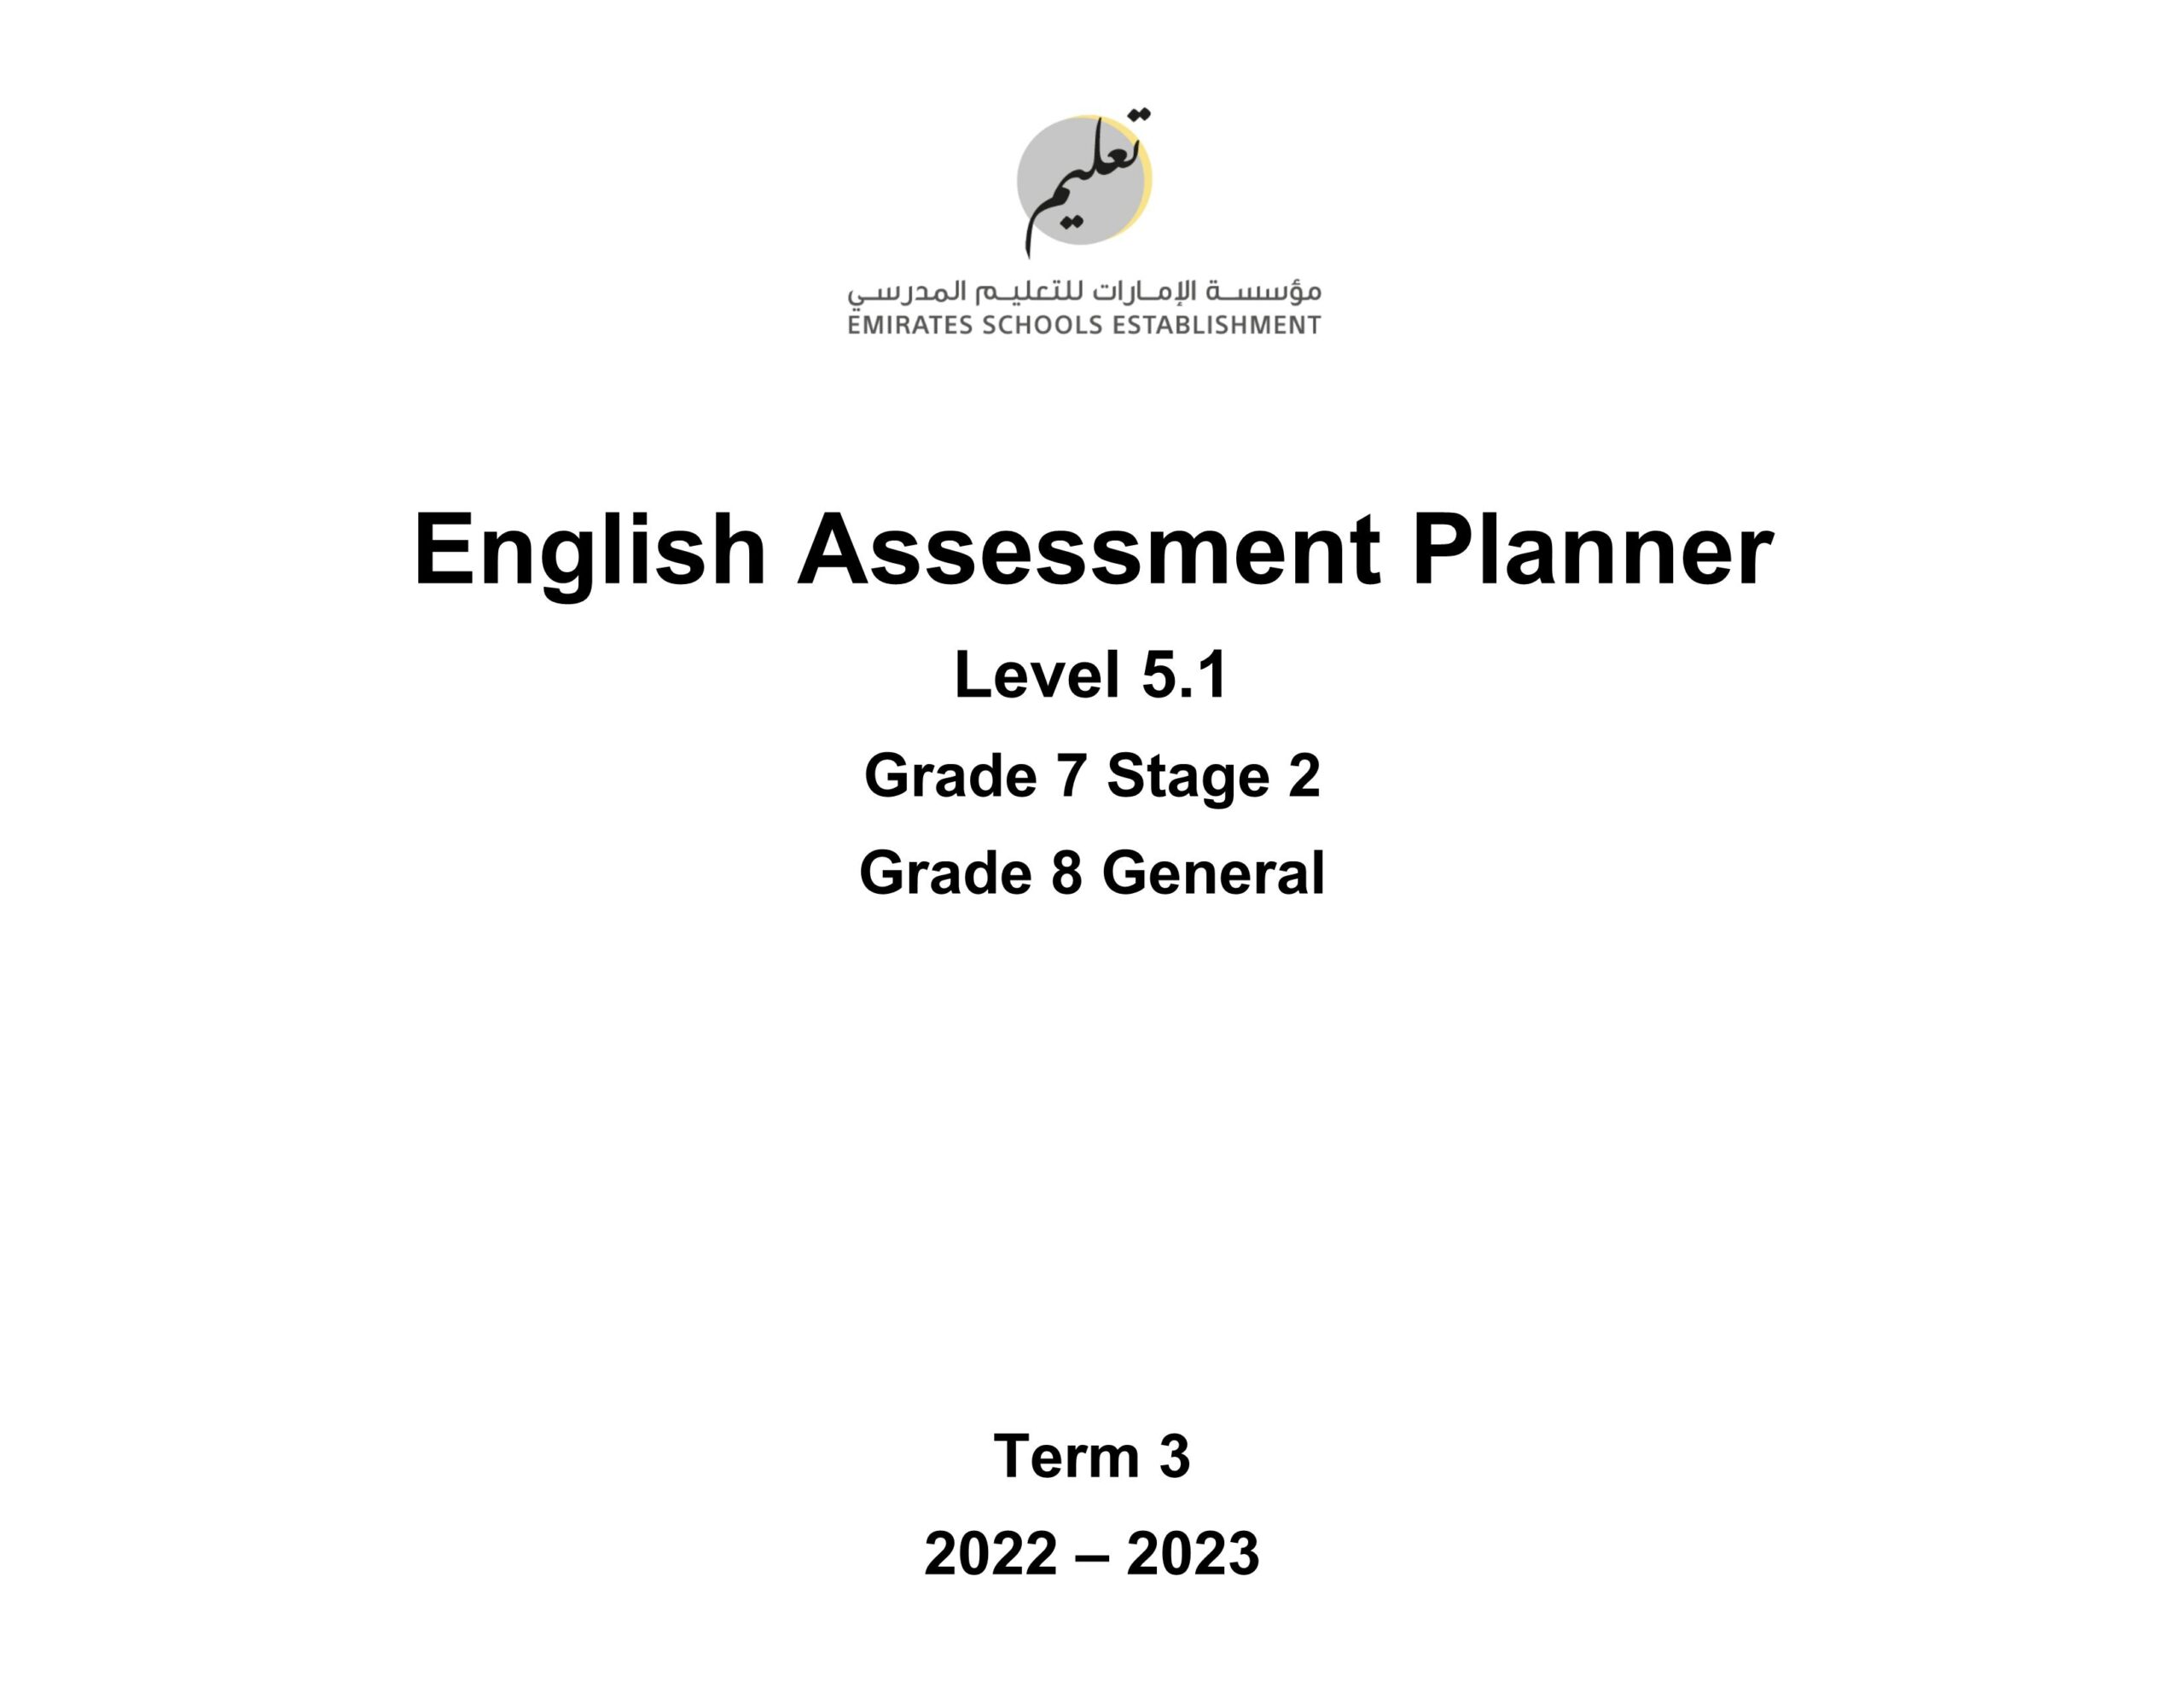 Assessment Planner اللغة الإنجليزية الصف السابع Stage 2 والصف الثامن General الفصل الدراسي الثالث 2022-2023